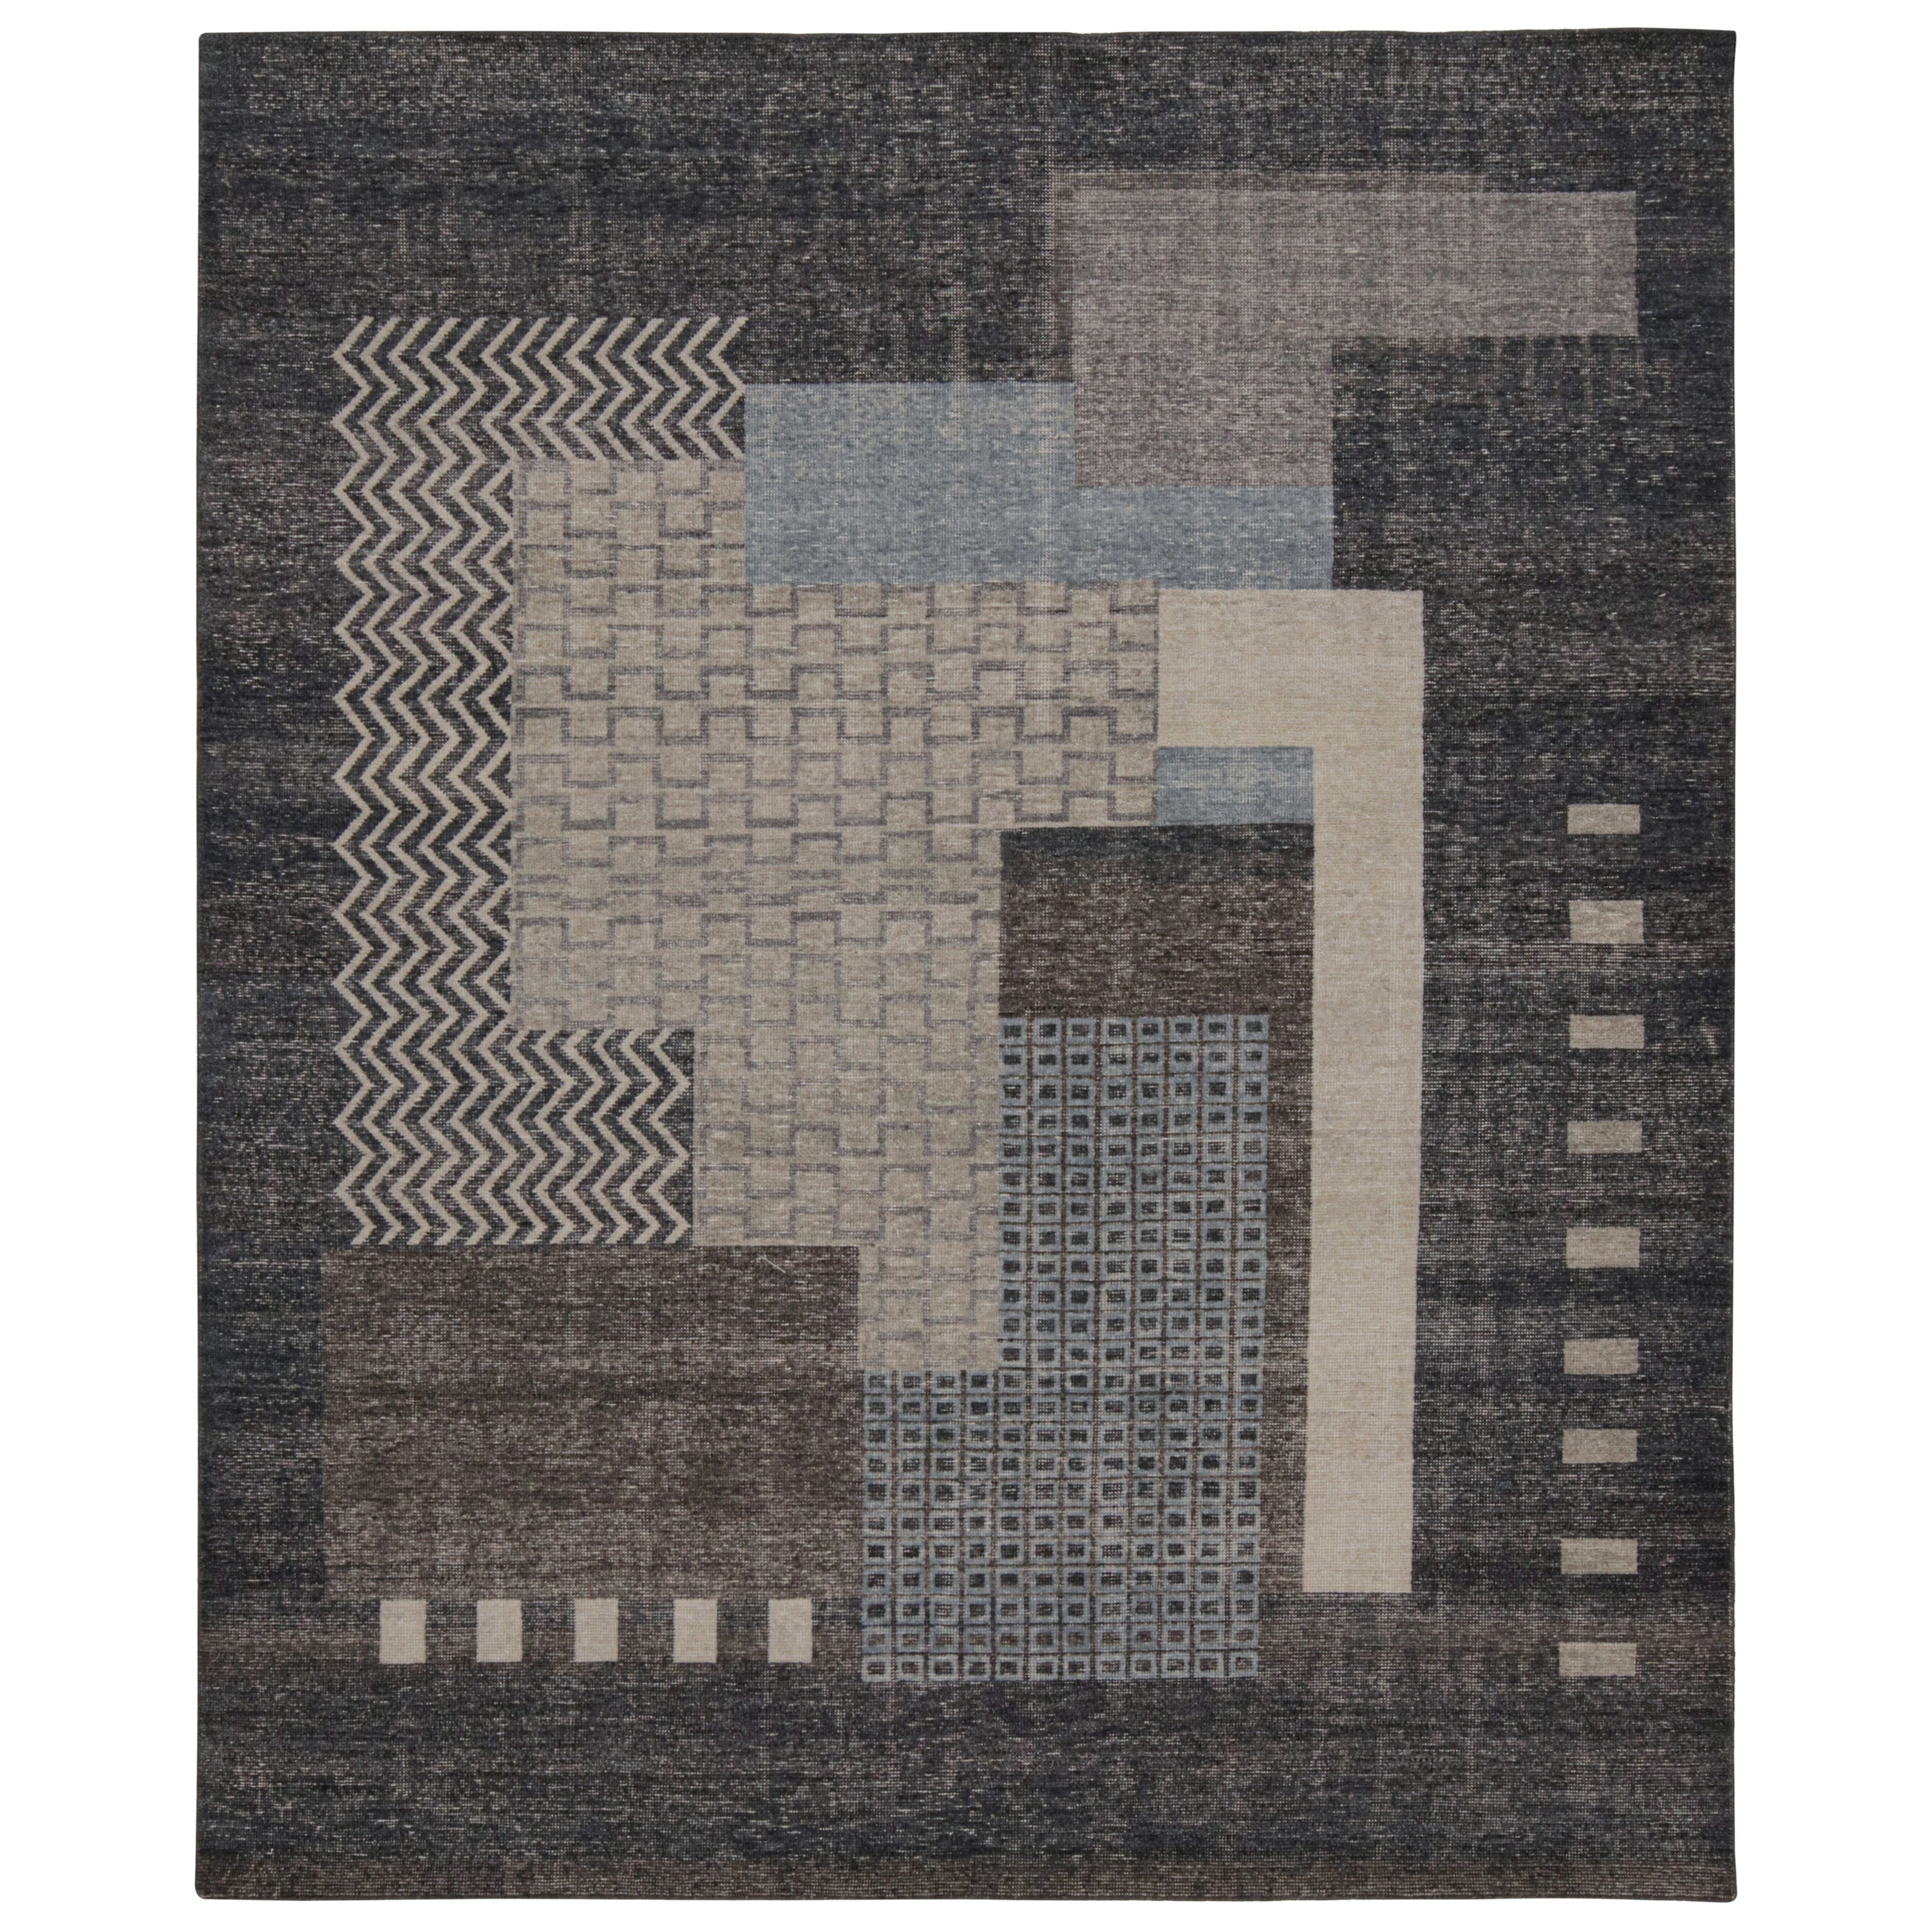 Moderner französischer Art-Déco-Teppich von Rug & Kilim, mit geometrischen Mustern